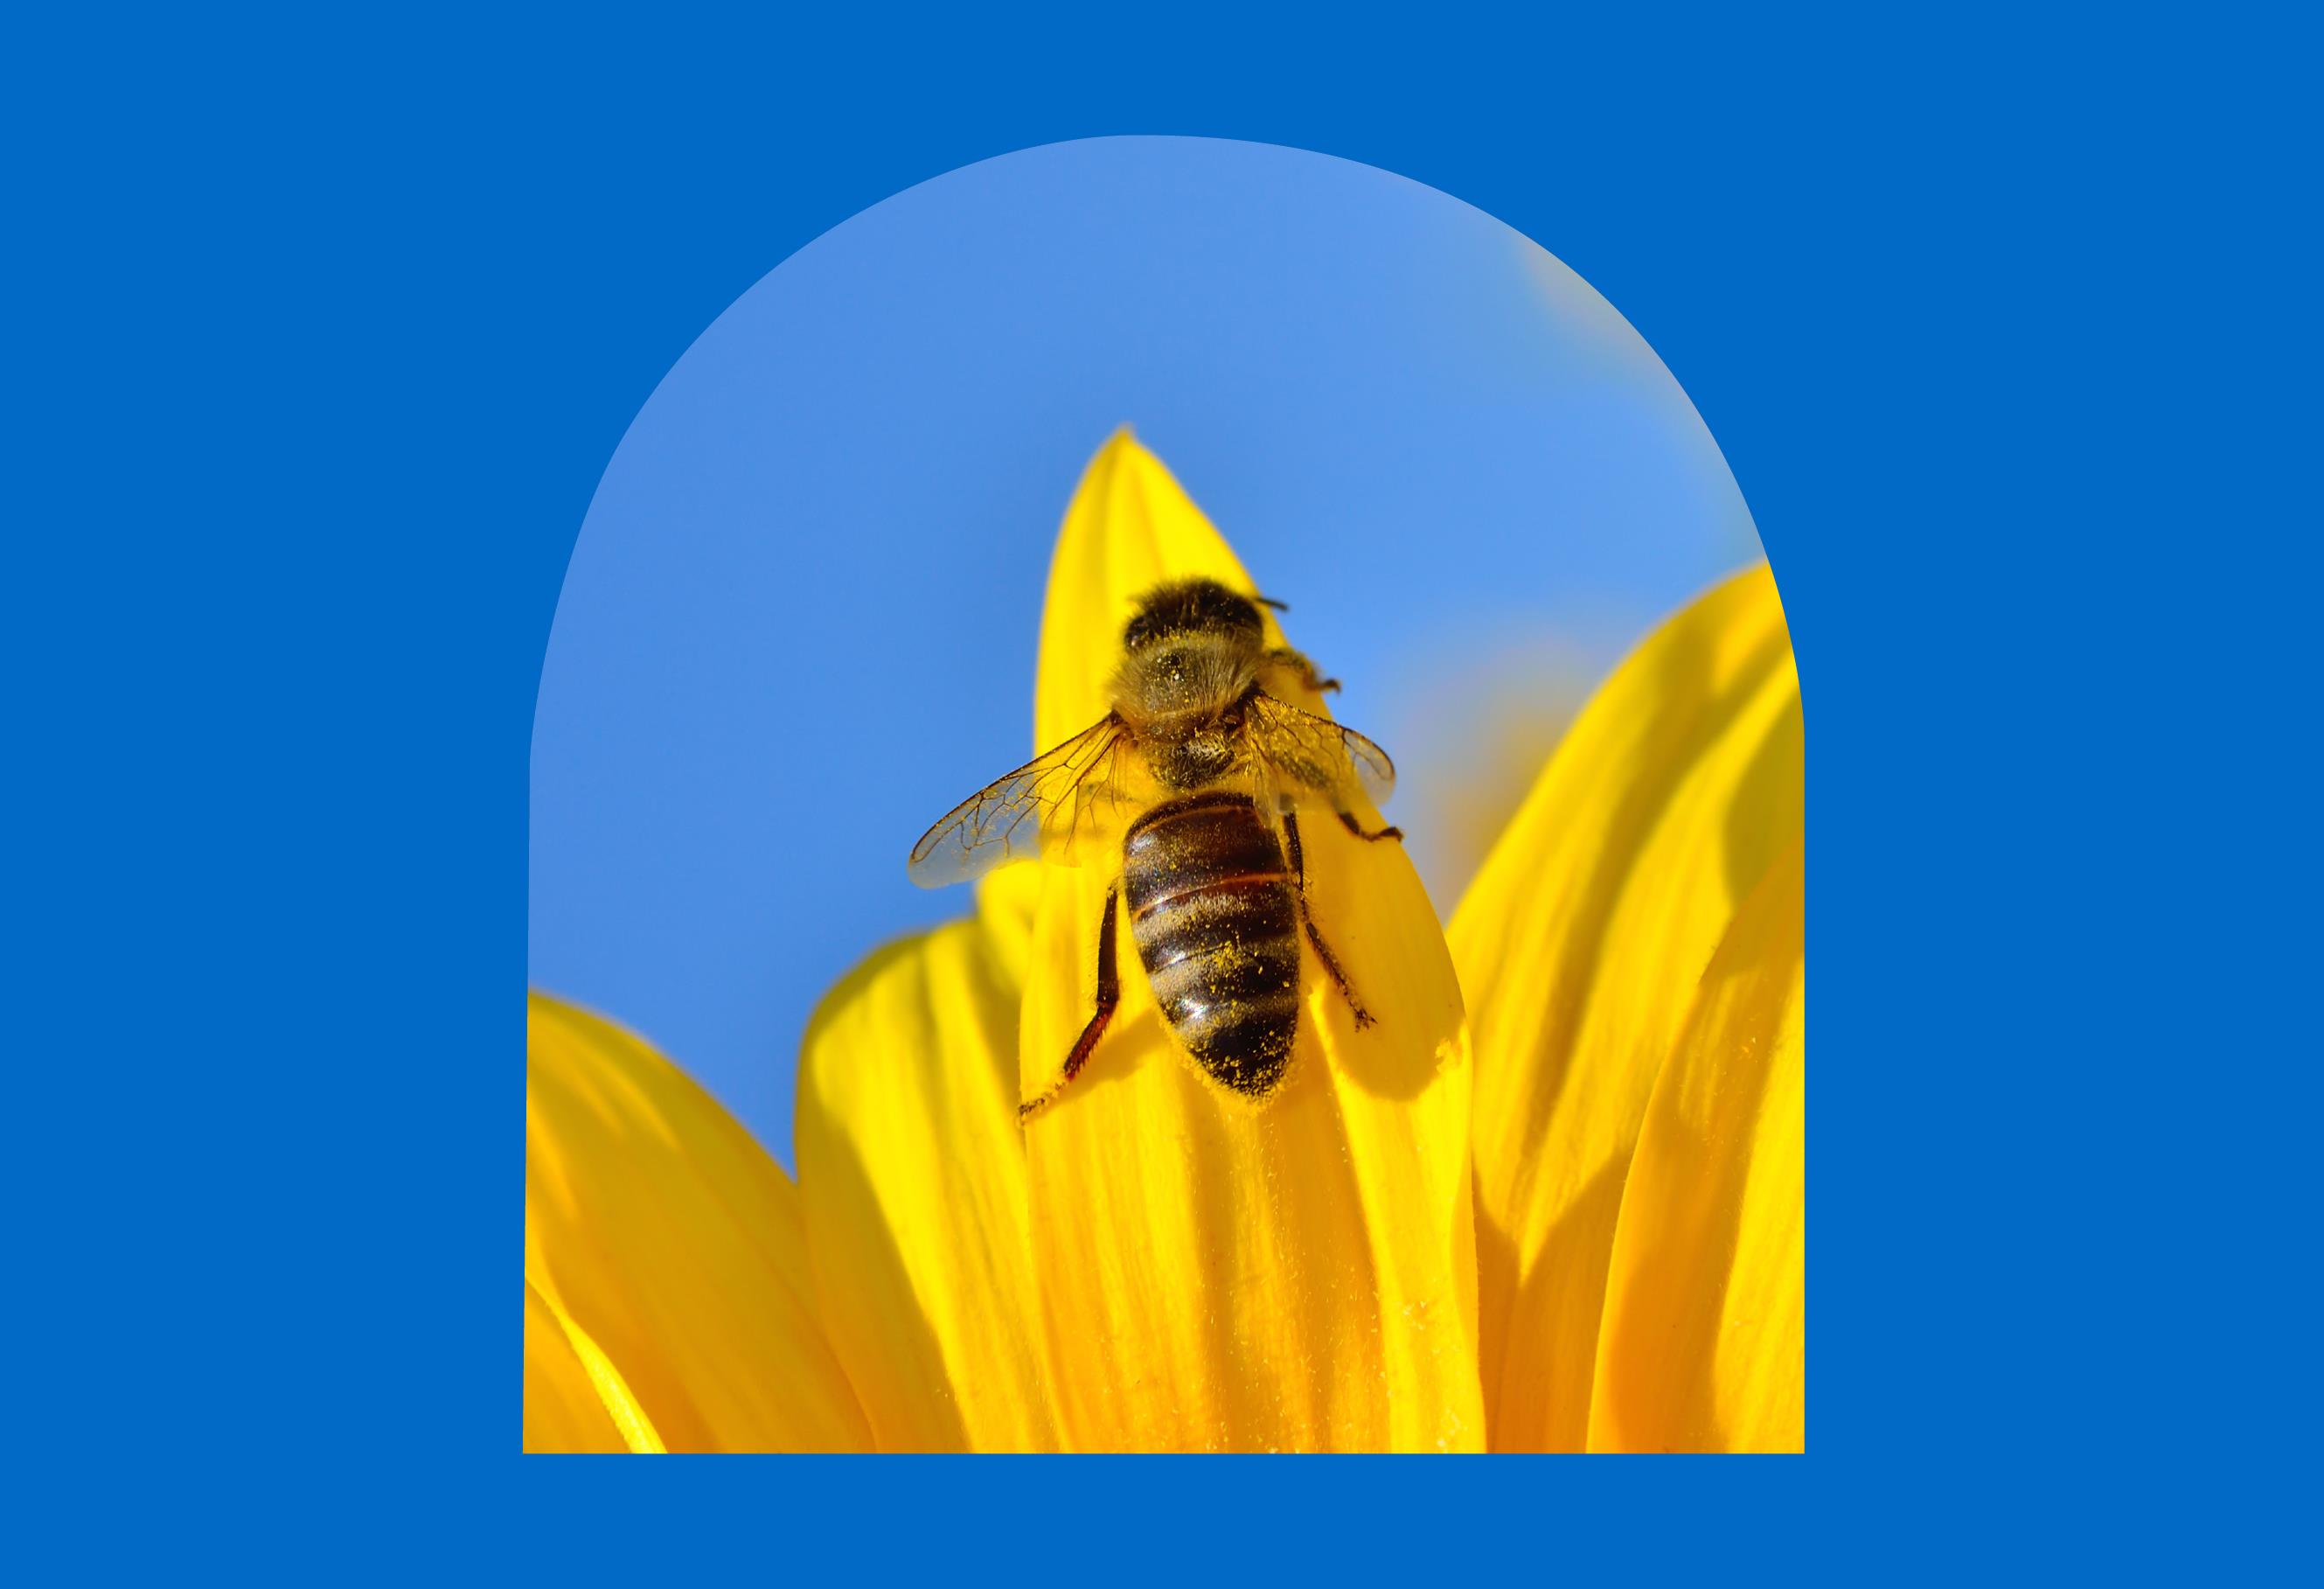 BeeHive Sustainability Program